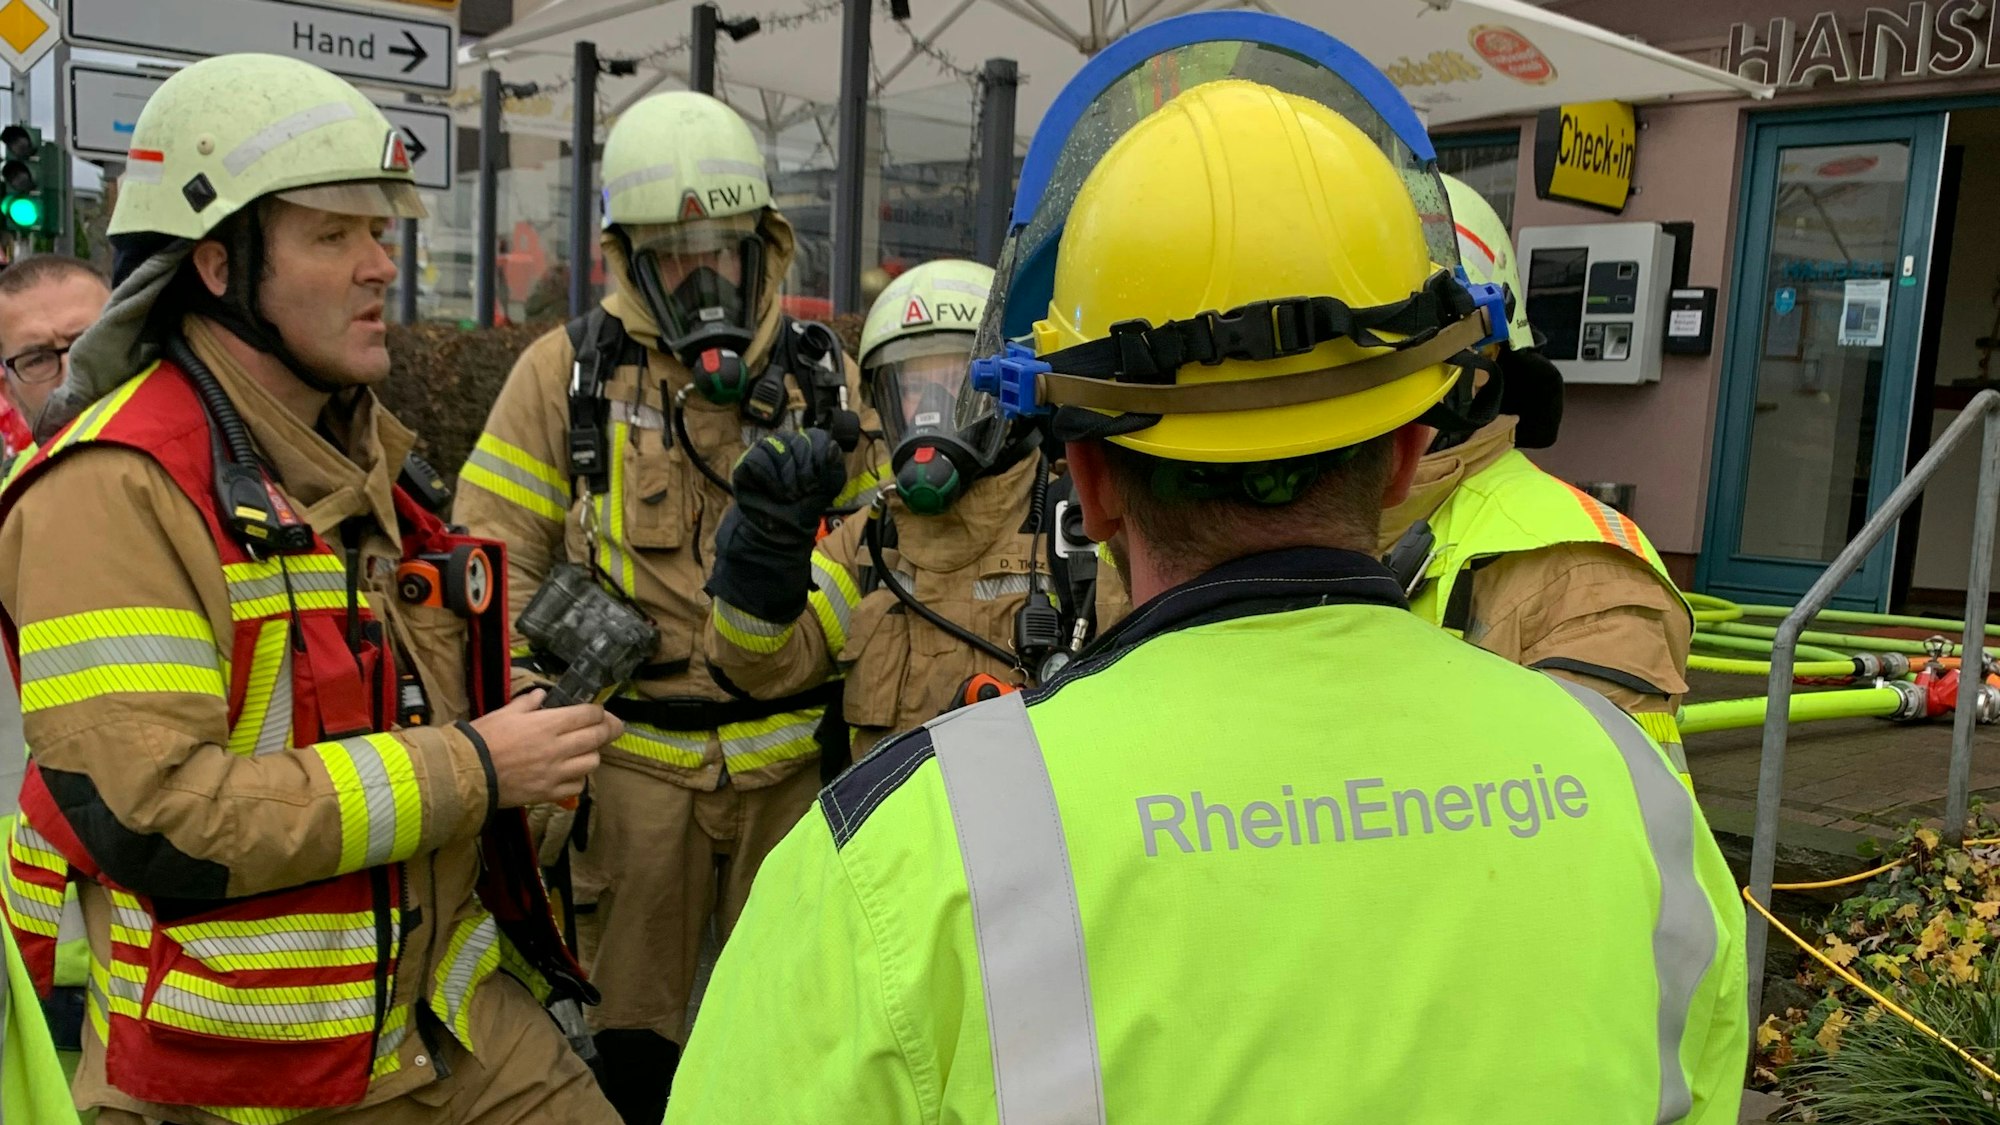 Feuerwehrleute und ein Mitarbeiter des Energieversorgers Rheinenergie stehen an eine Einsatzstelle.